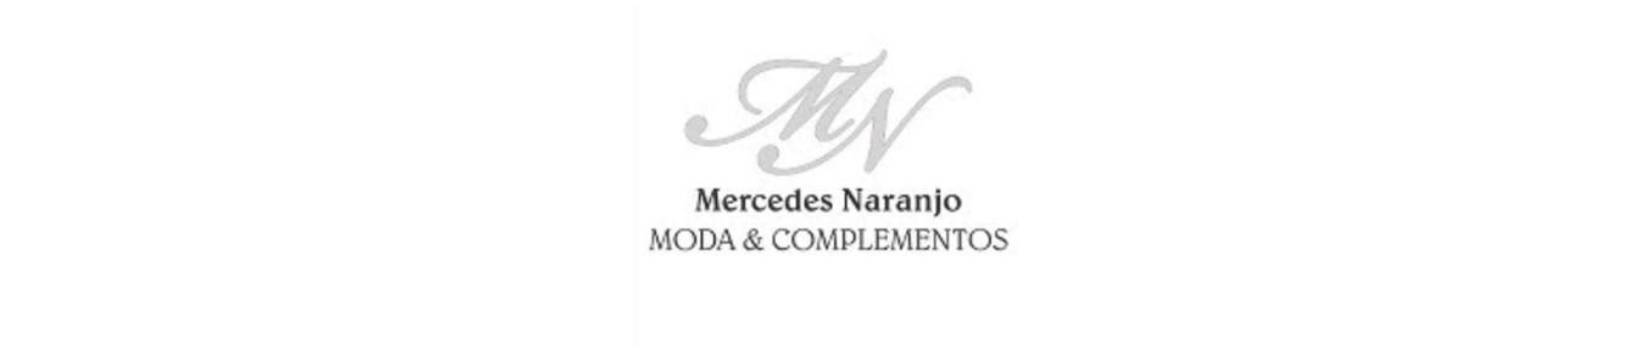 Mercedes Naranjo & Moda Complementos